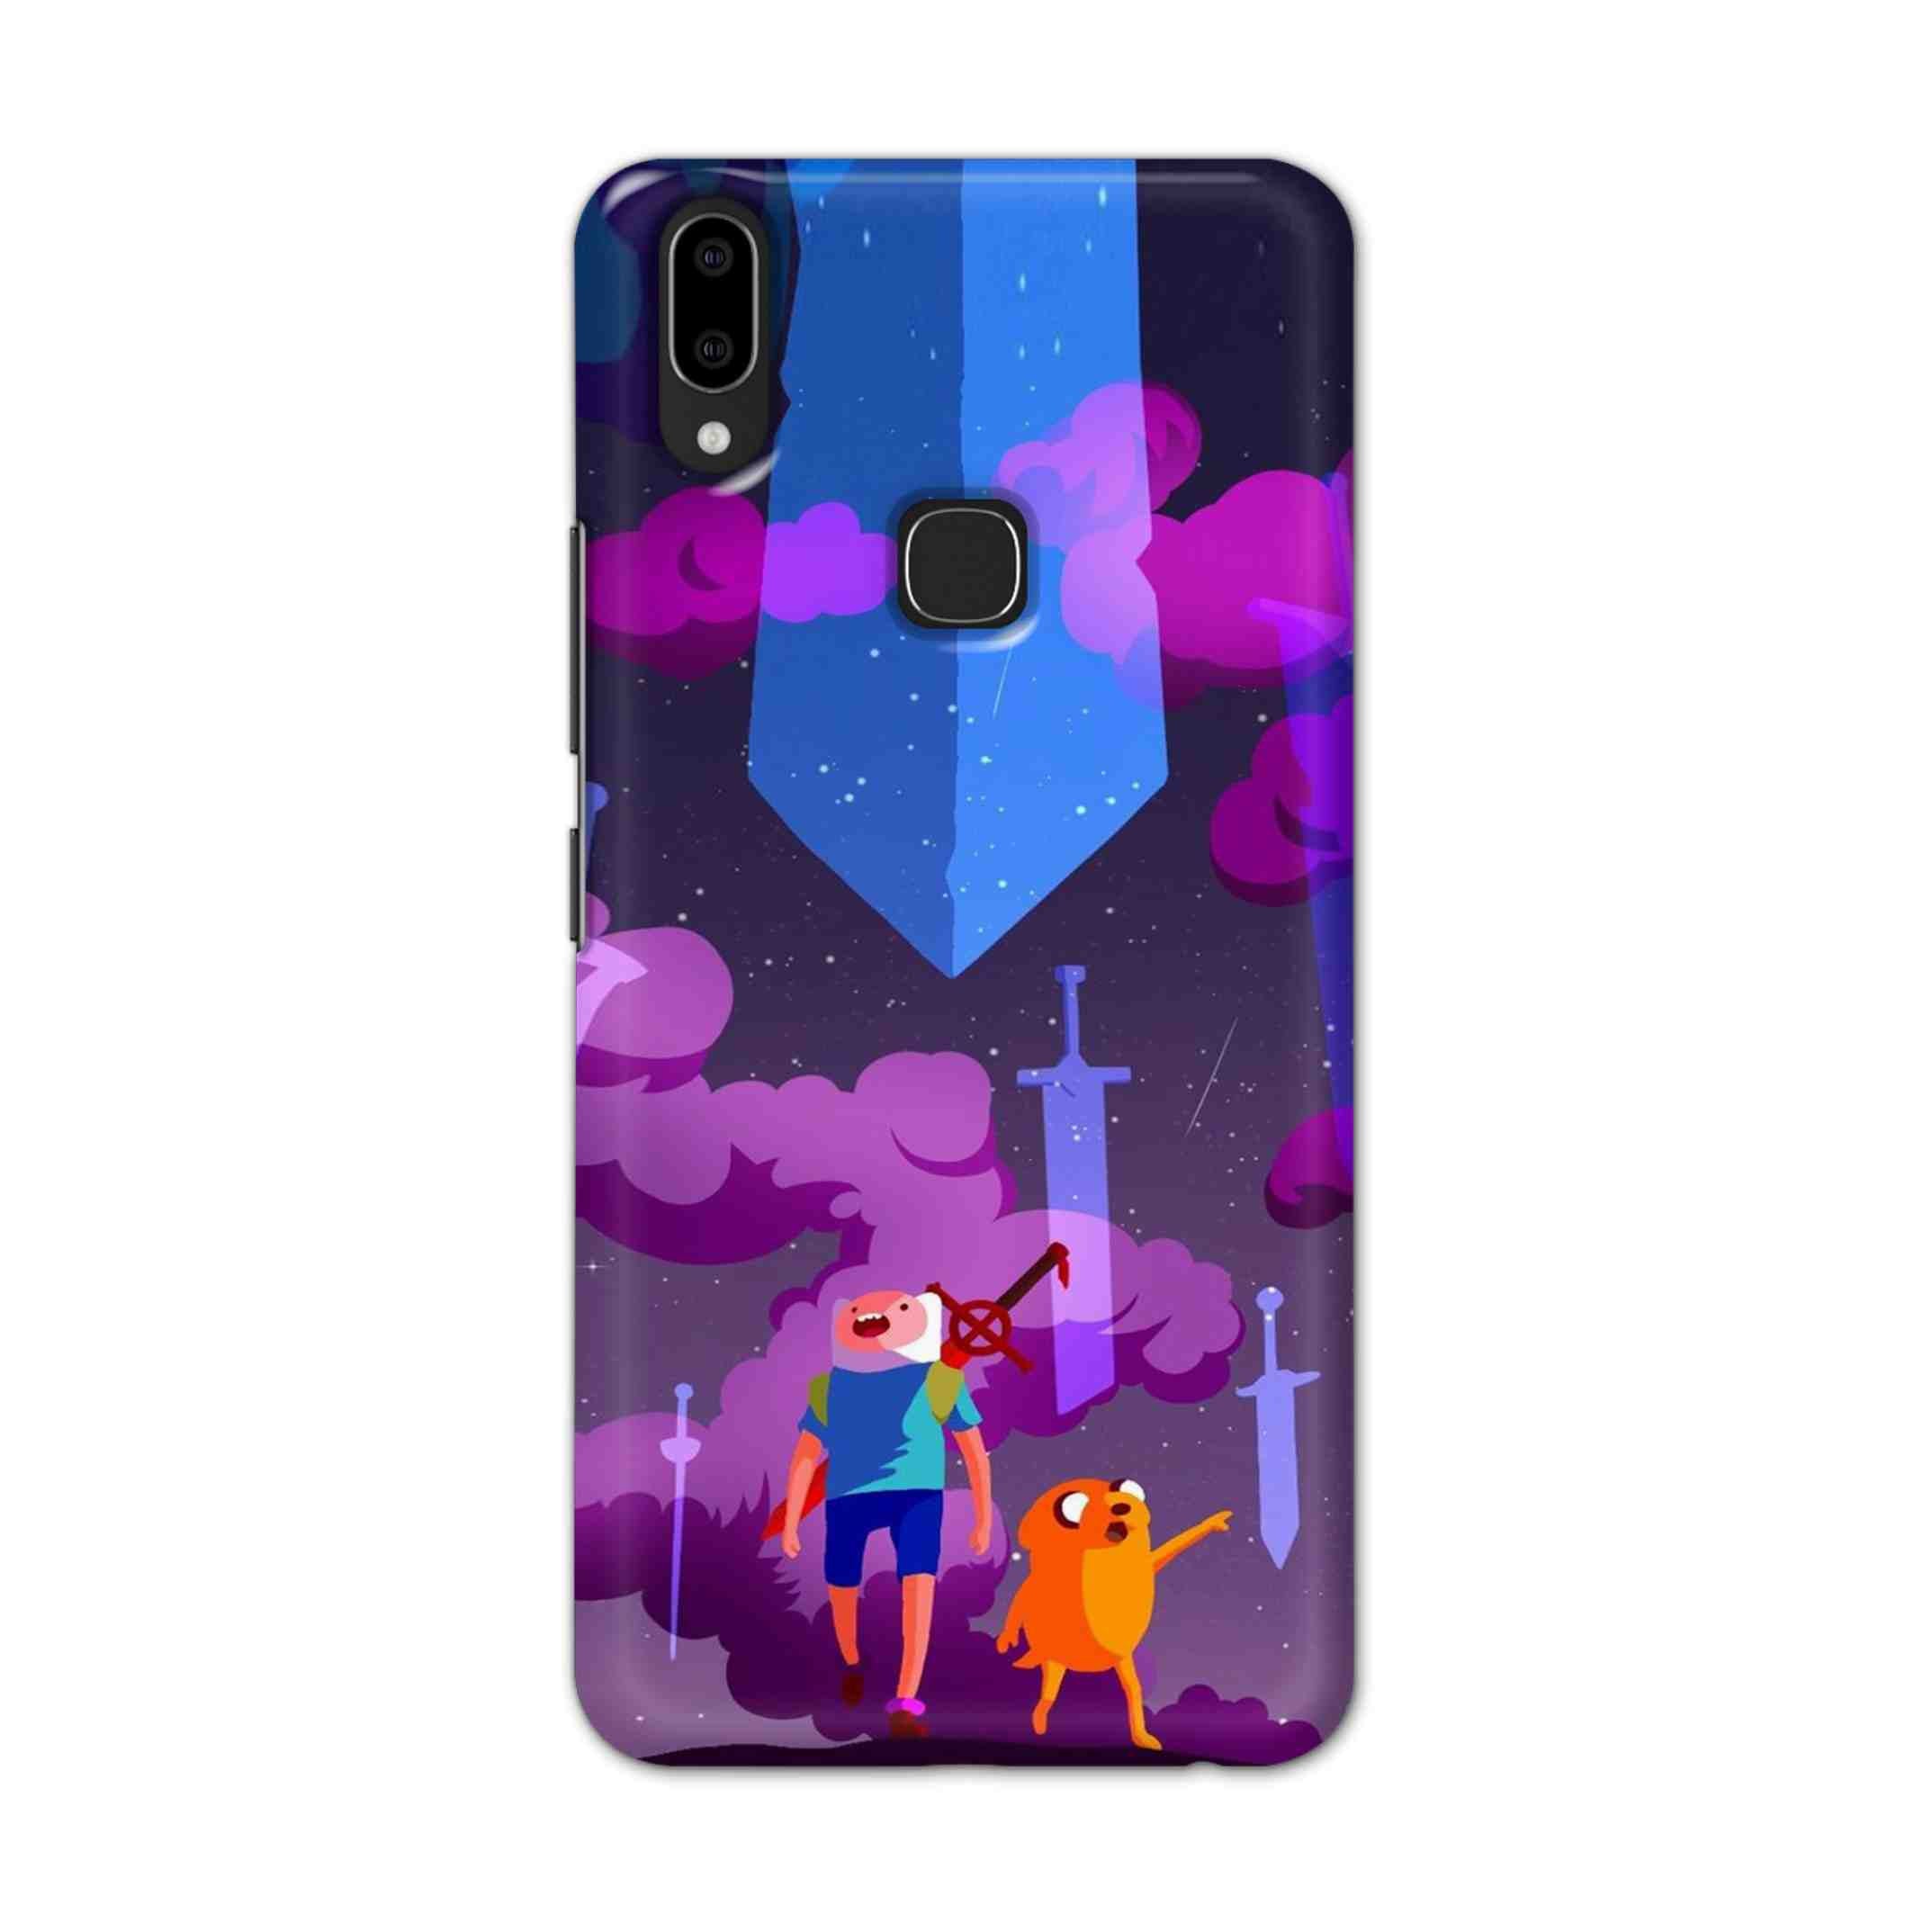 Buy Micky Cartoon Hard Back Mobile Phone Case Cover For Vivo V9 / V9 Youth Online